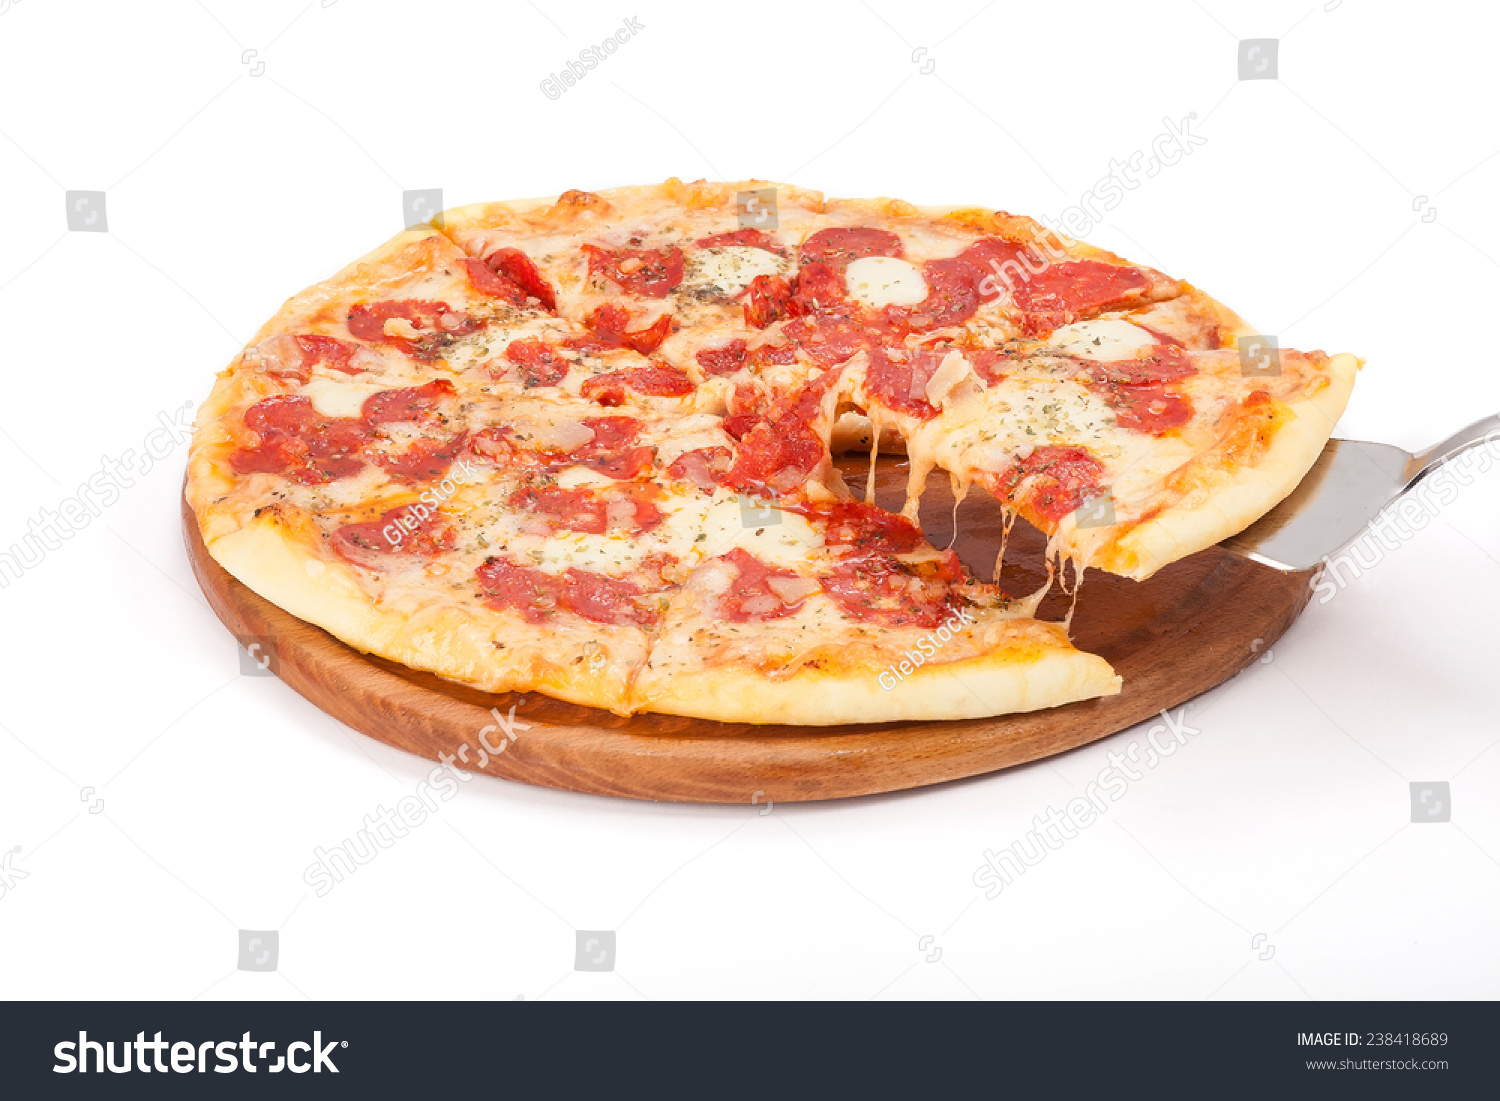 пицца с колбасой рецепты приготовления в домашних условиях фото 74